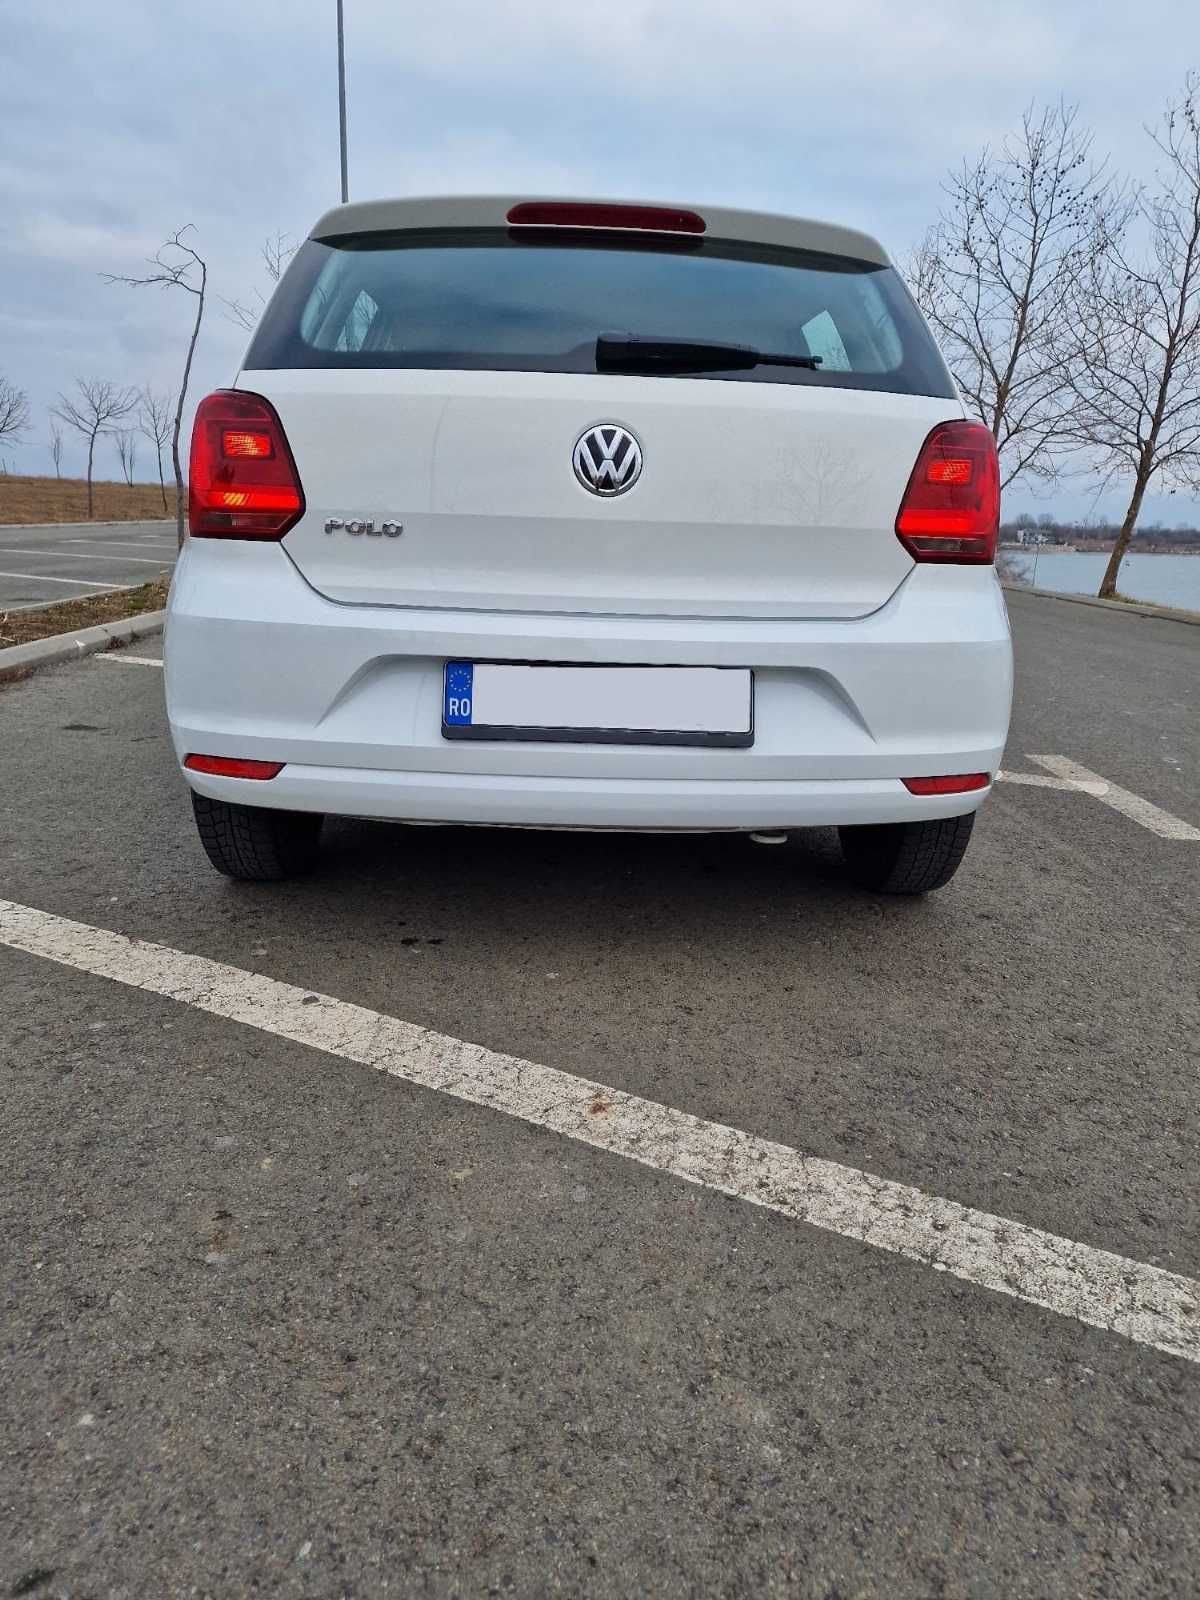 Volkswagen Polo 6C 2017 1.0 MPI